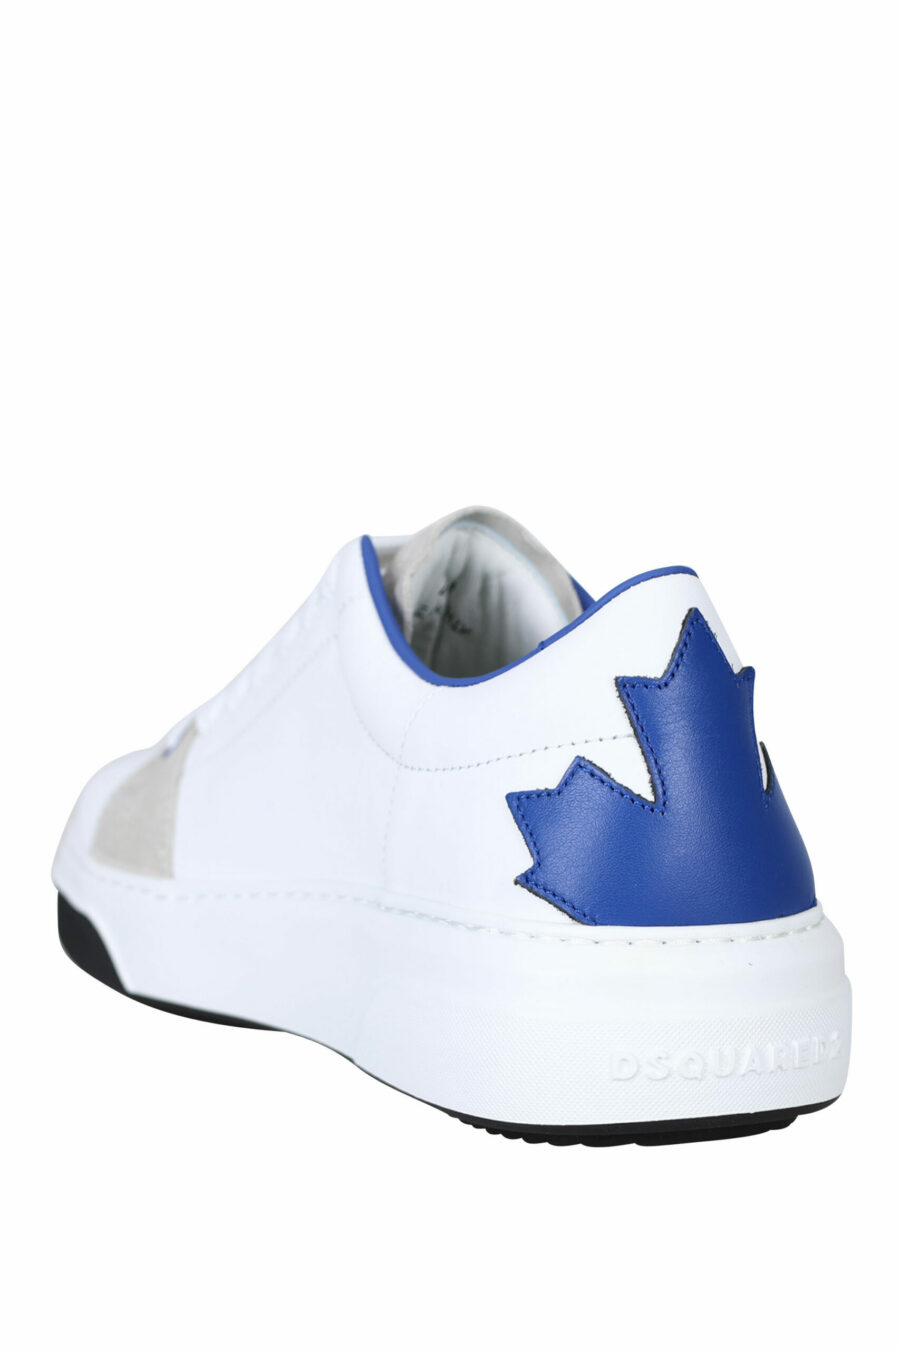 Chinelos brancos com folha bege e azul com mini-logotipo - 8055777258811 3 scaled